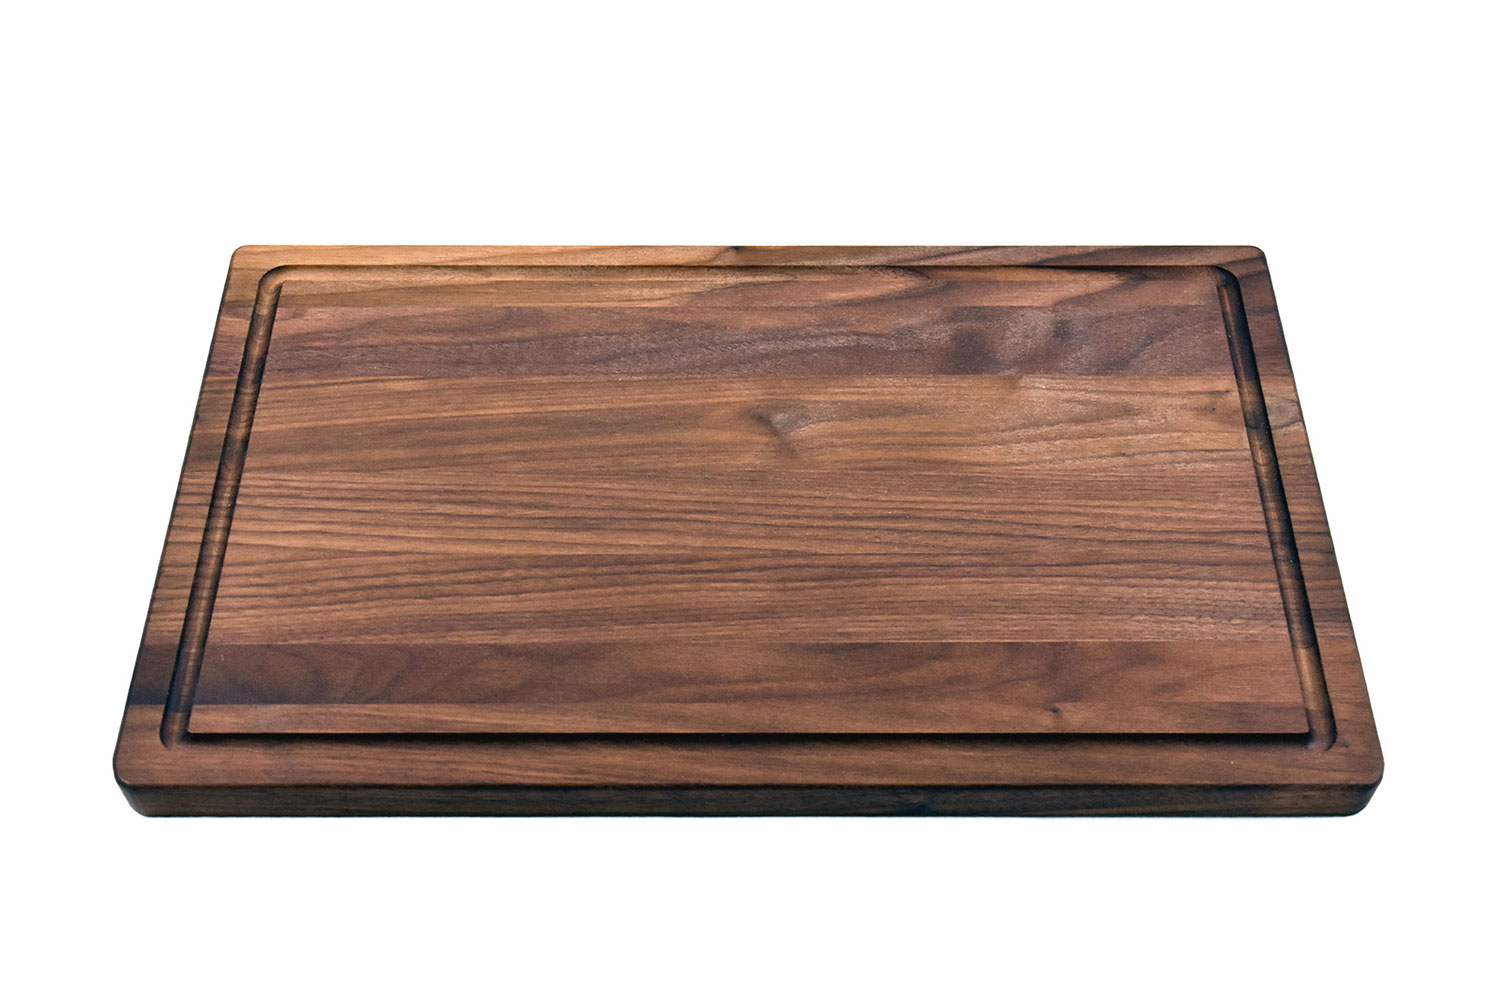 Walnut cutting board